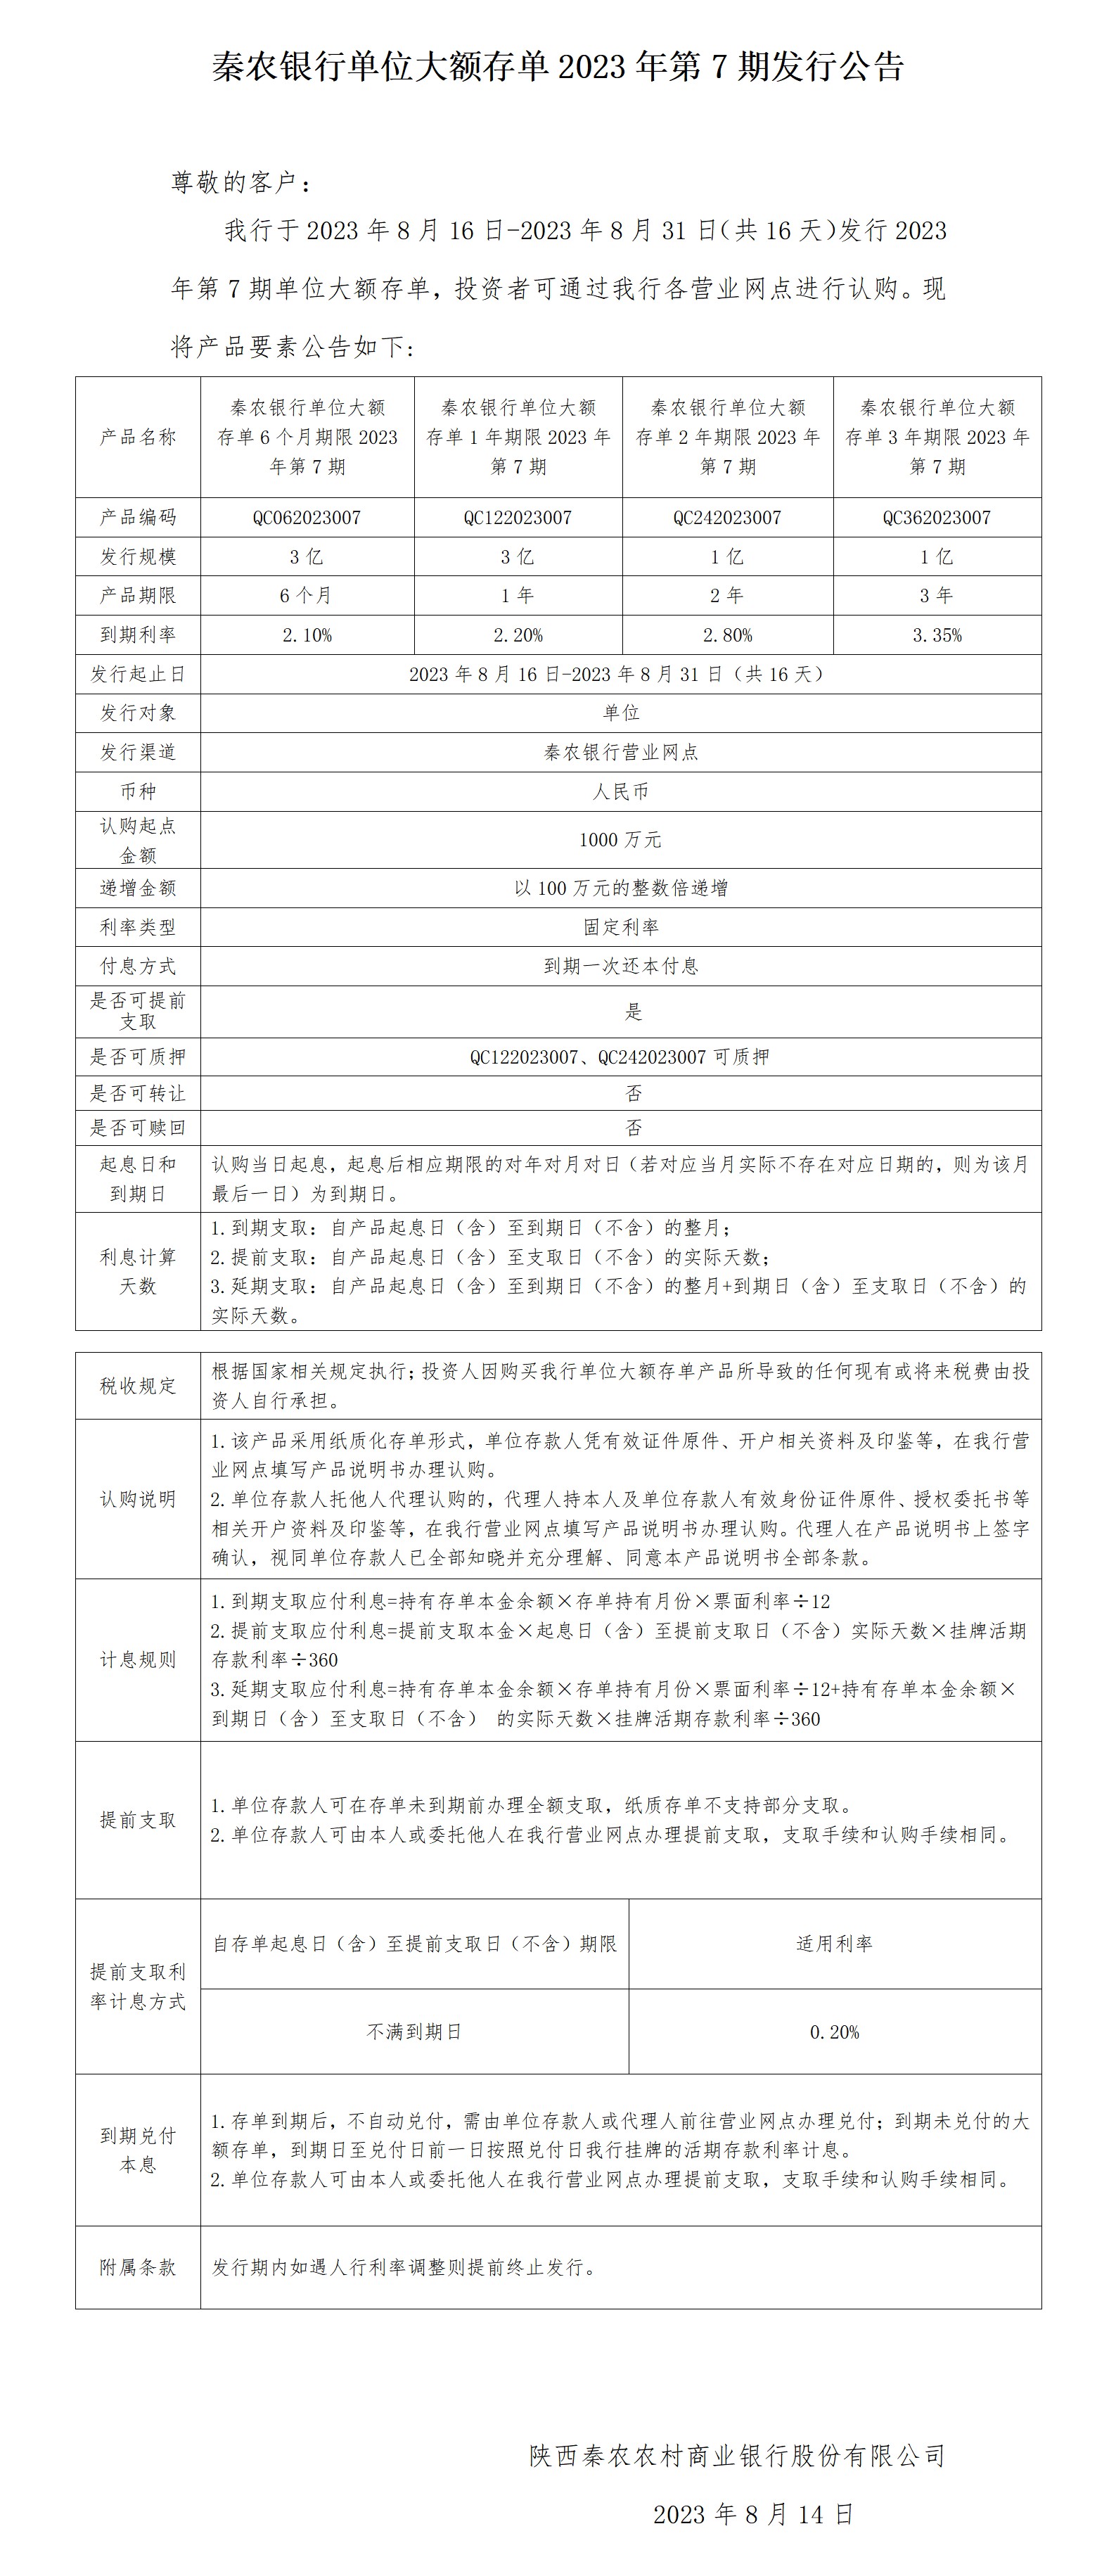 秦农银行单位大额存单2023年第7期发行公告2023.8.14_01(1)(1).jpg